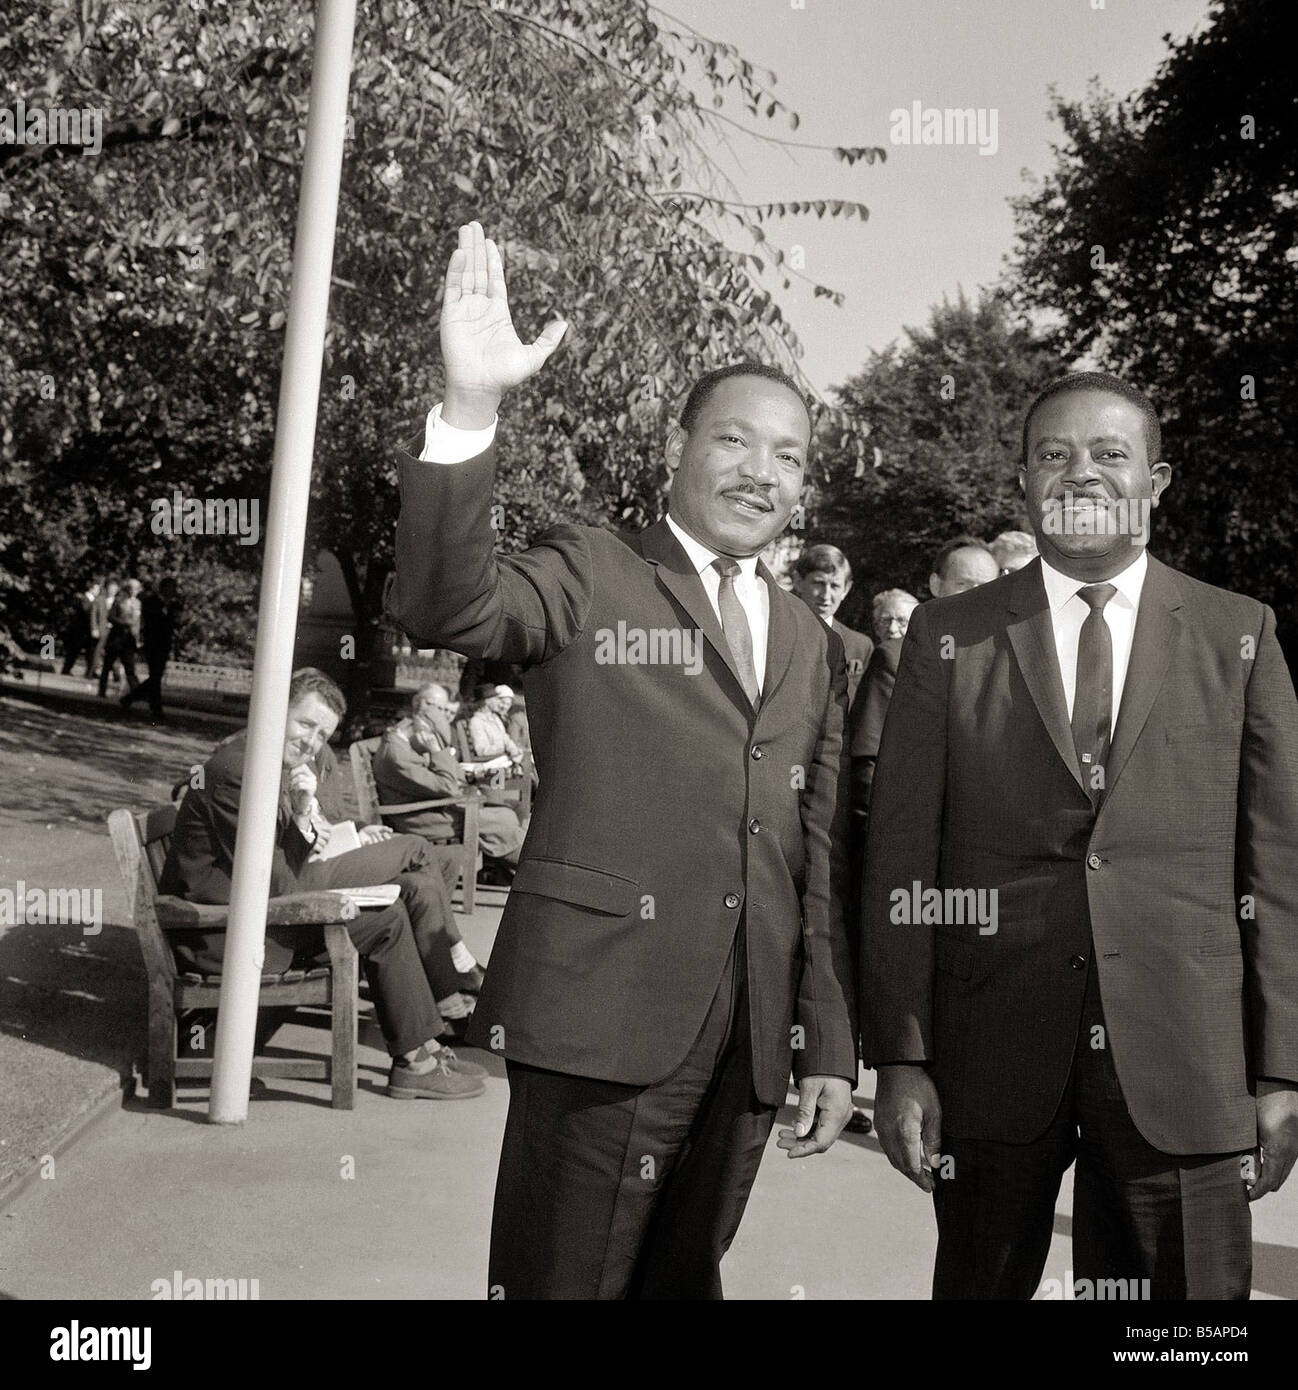 Martin Luther King Novembre 1964 est arrivé à Londres hier 1960 LAFjan05 15 Janvier marque l'anniversaire des droits civils des Noirs américains, Martin Luther King Né à Atlanta en Géorgie en 1929 Lauréat du Prix Nobel de la paix en 1964 Banque D'Images